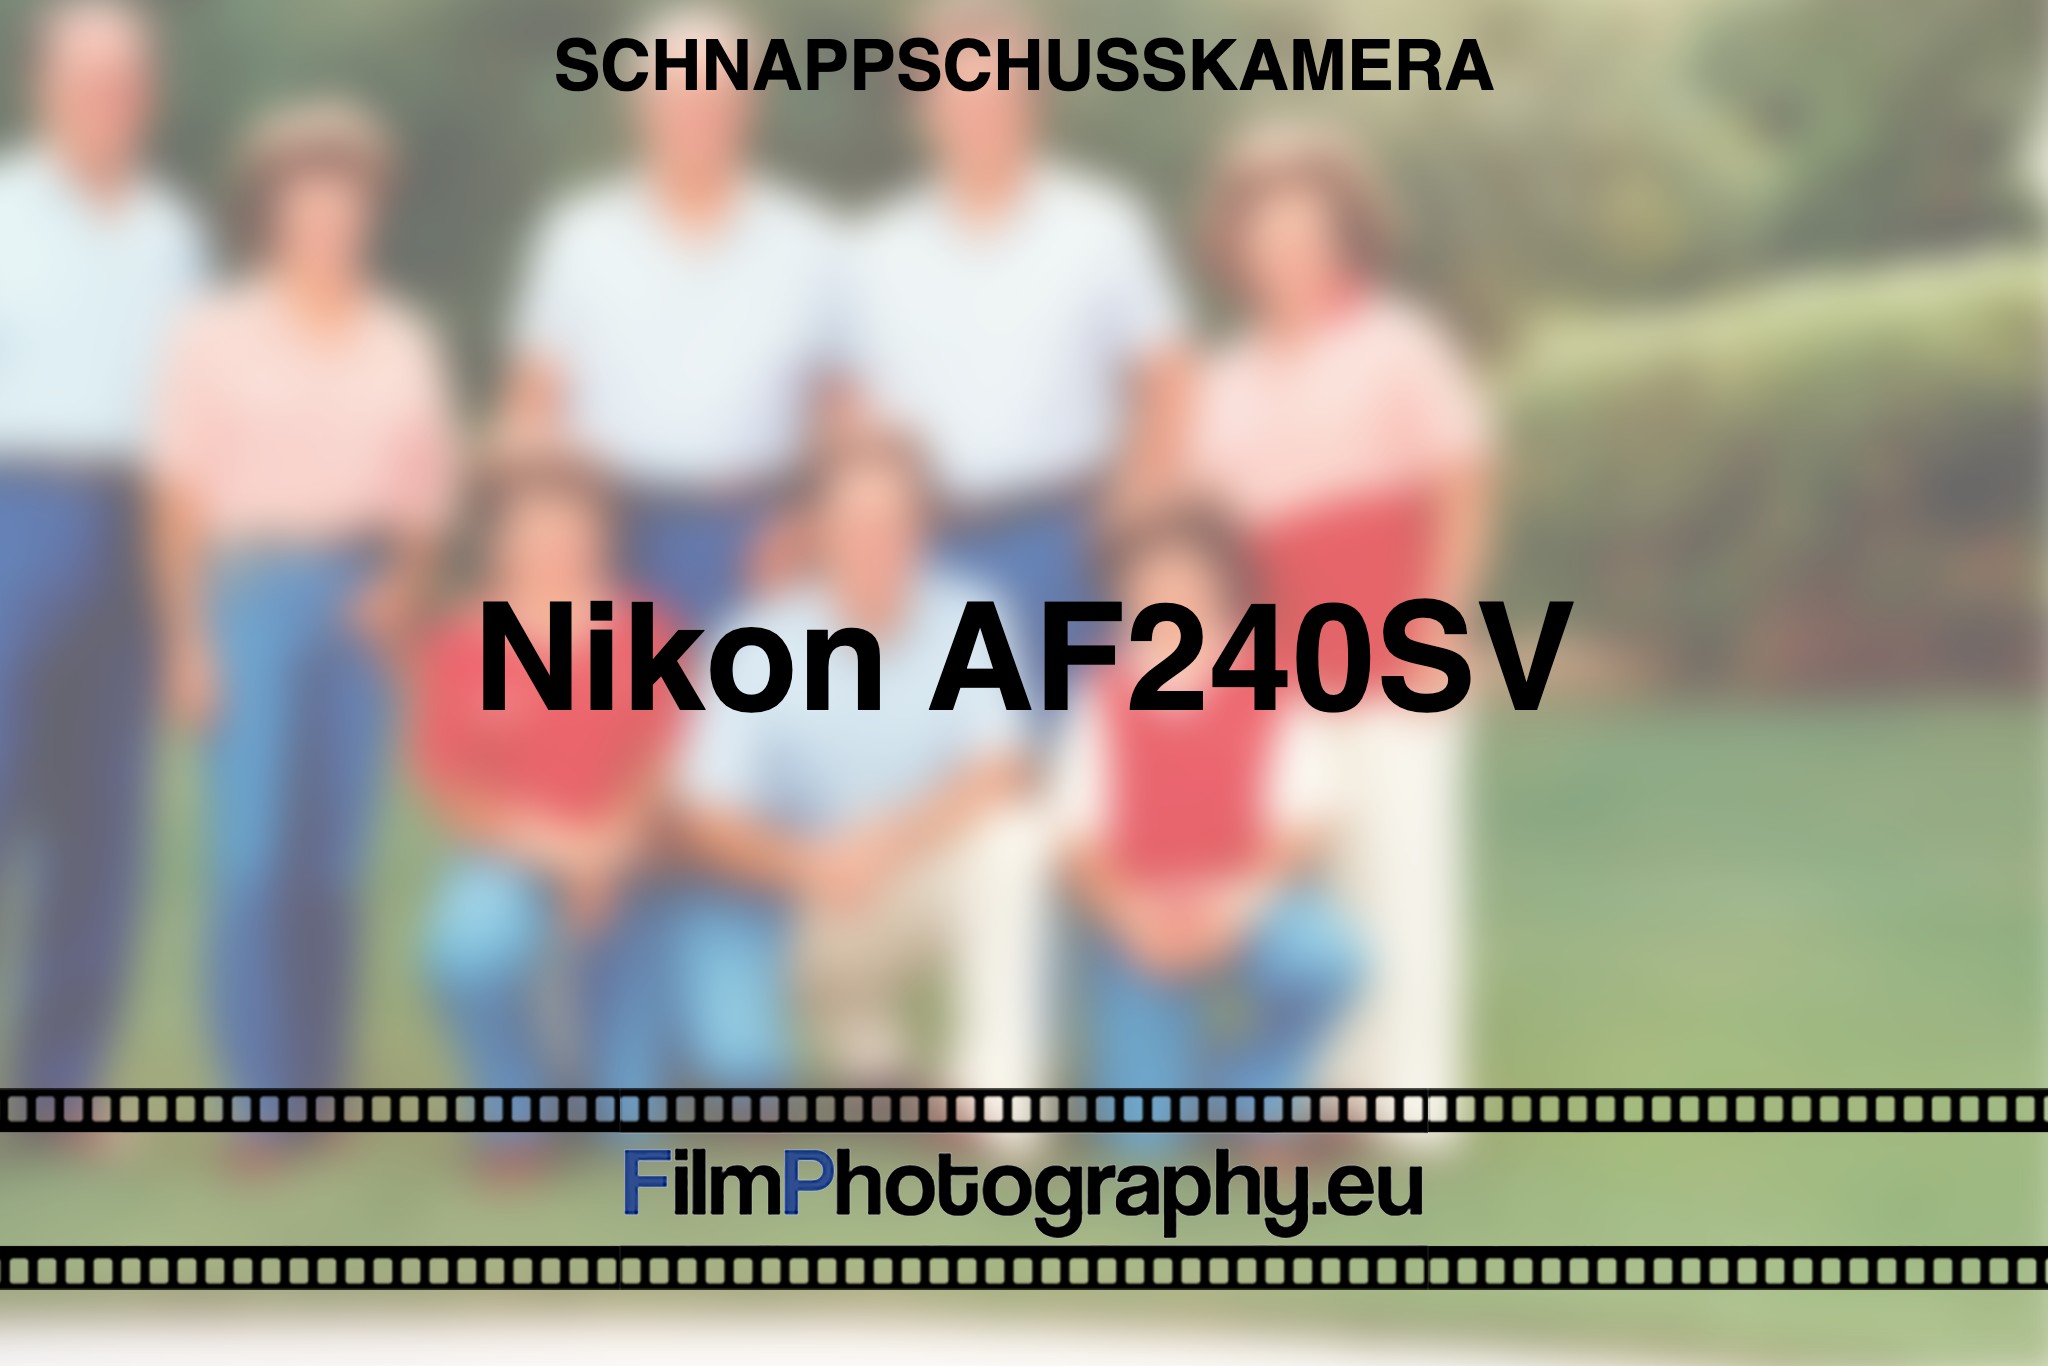 nikon-af240sv-schnappschusskamera-bnv